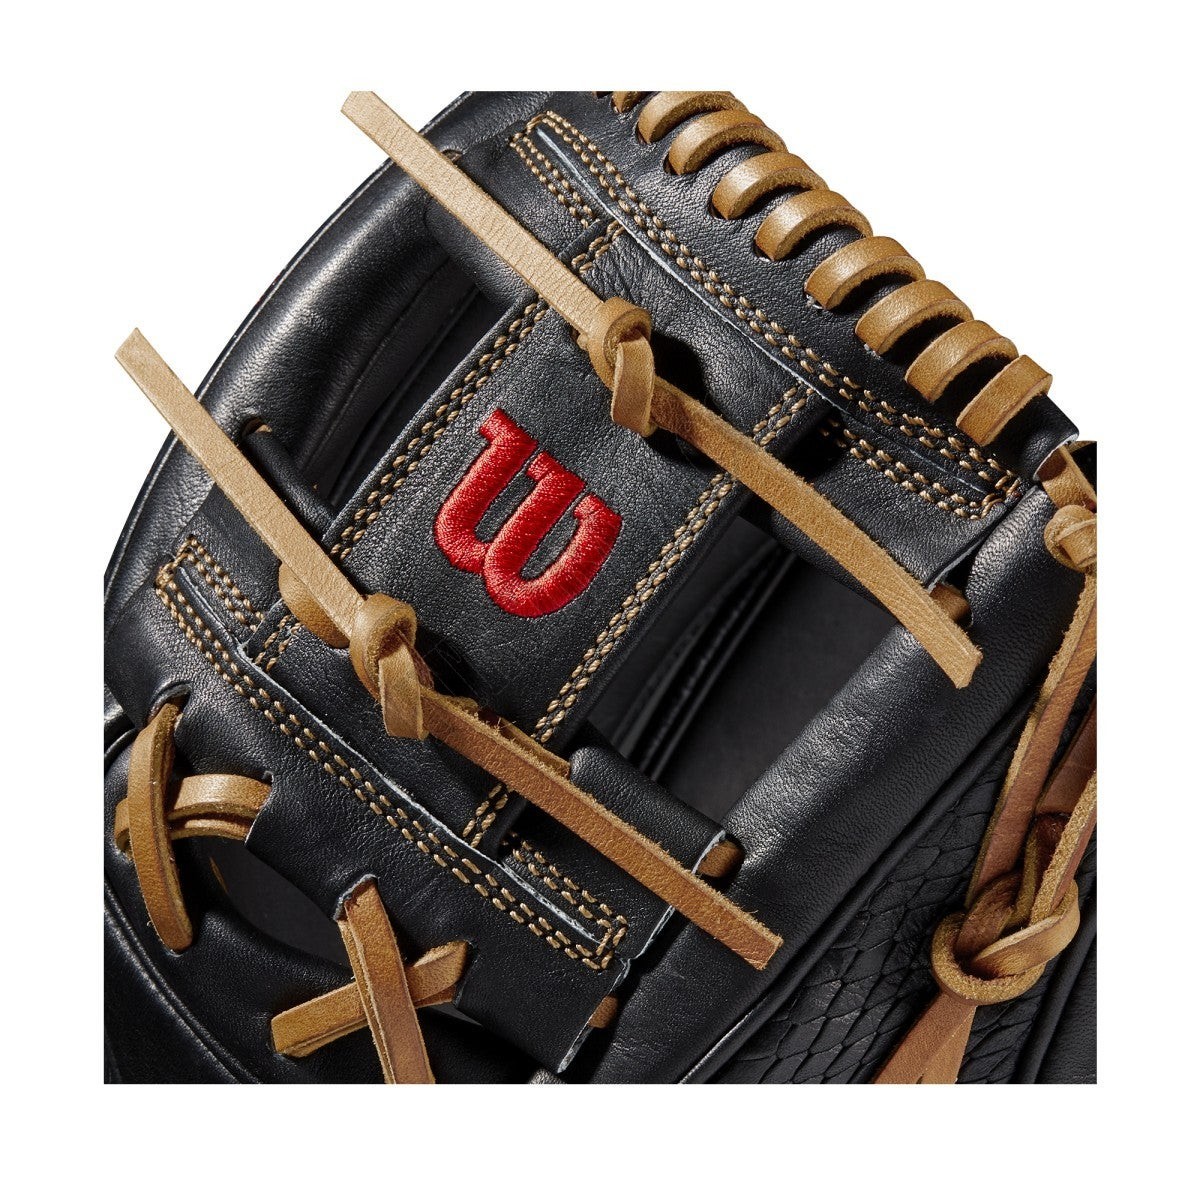 2021 A2K 1786SS 11.5" Infield Baseball Glove ● Wilson Promotions - -5